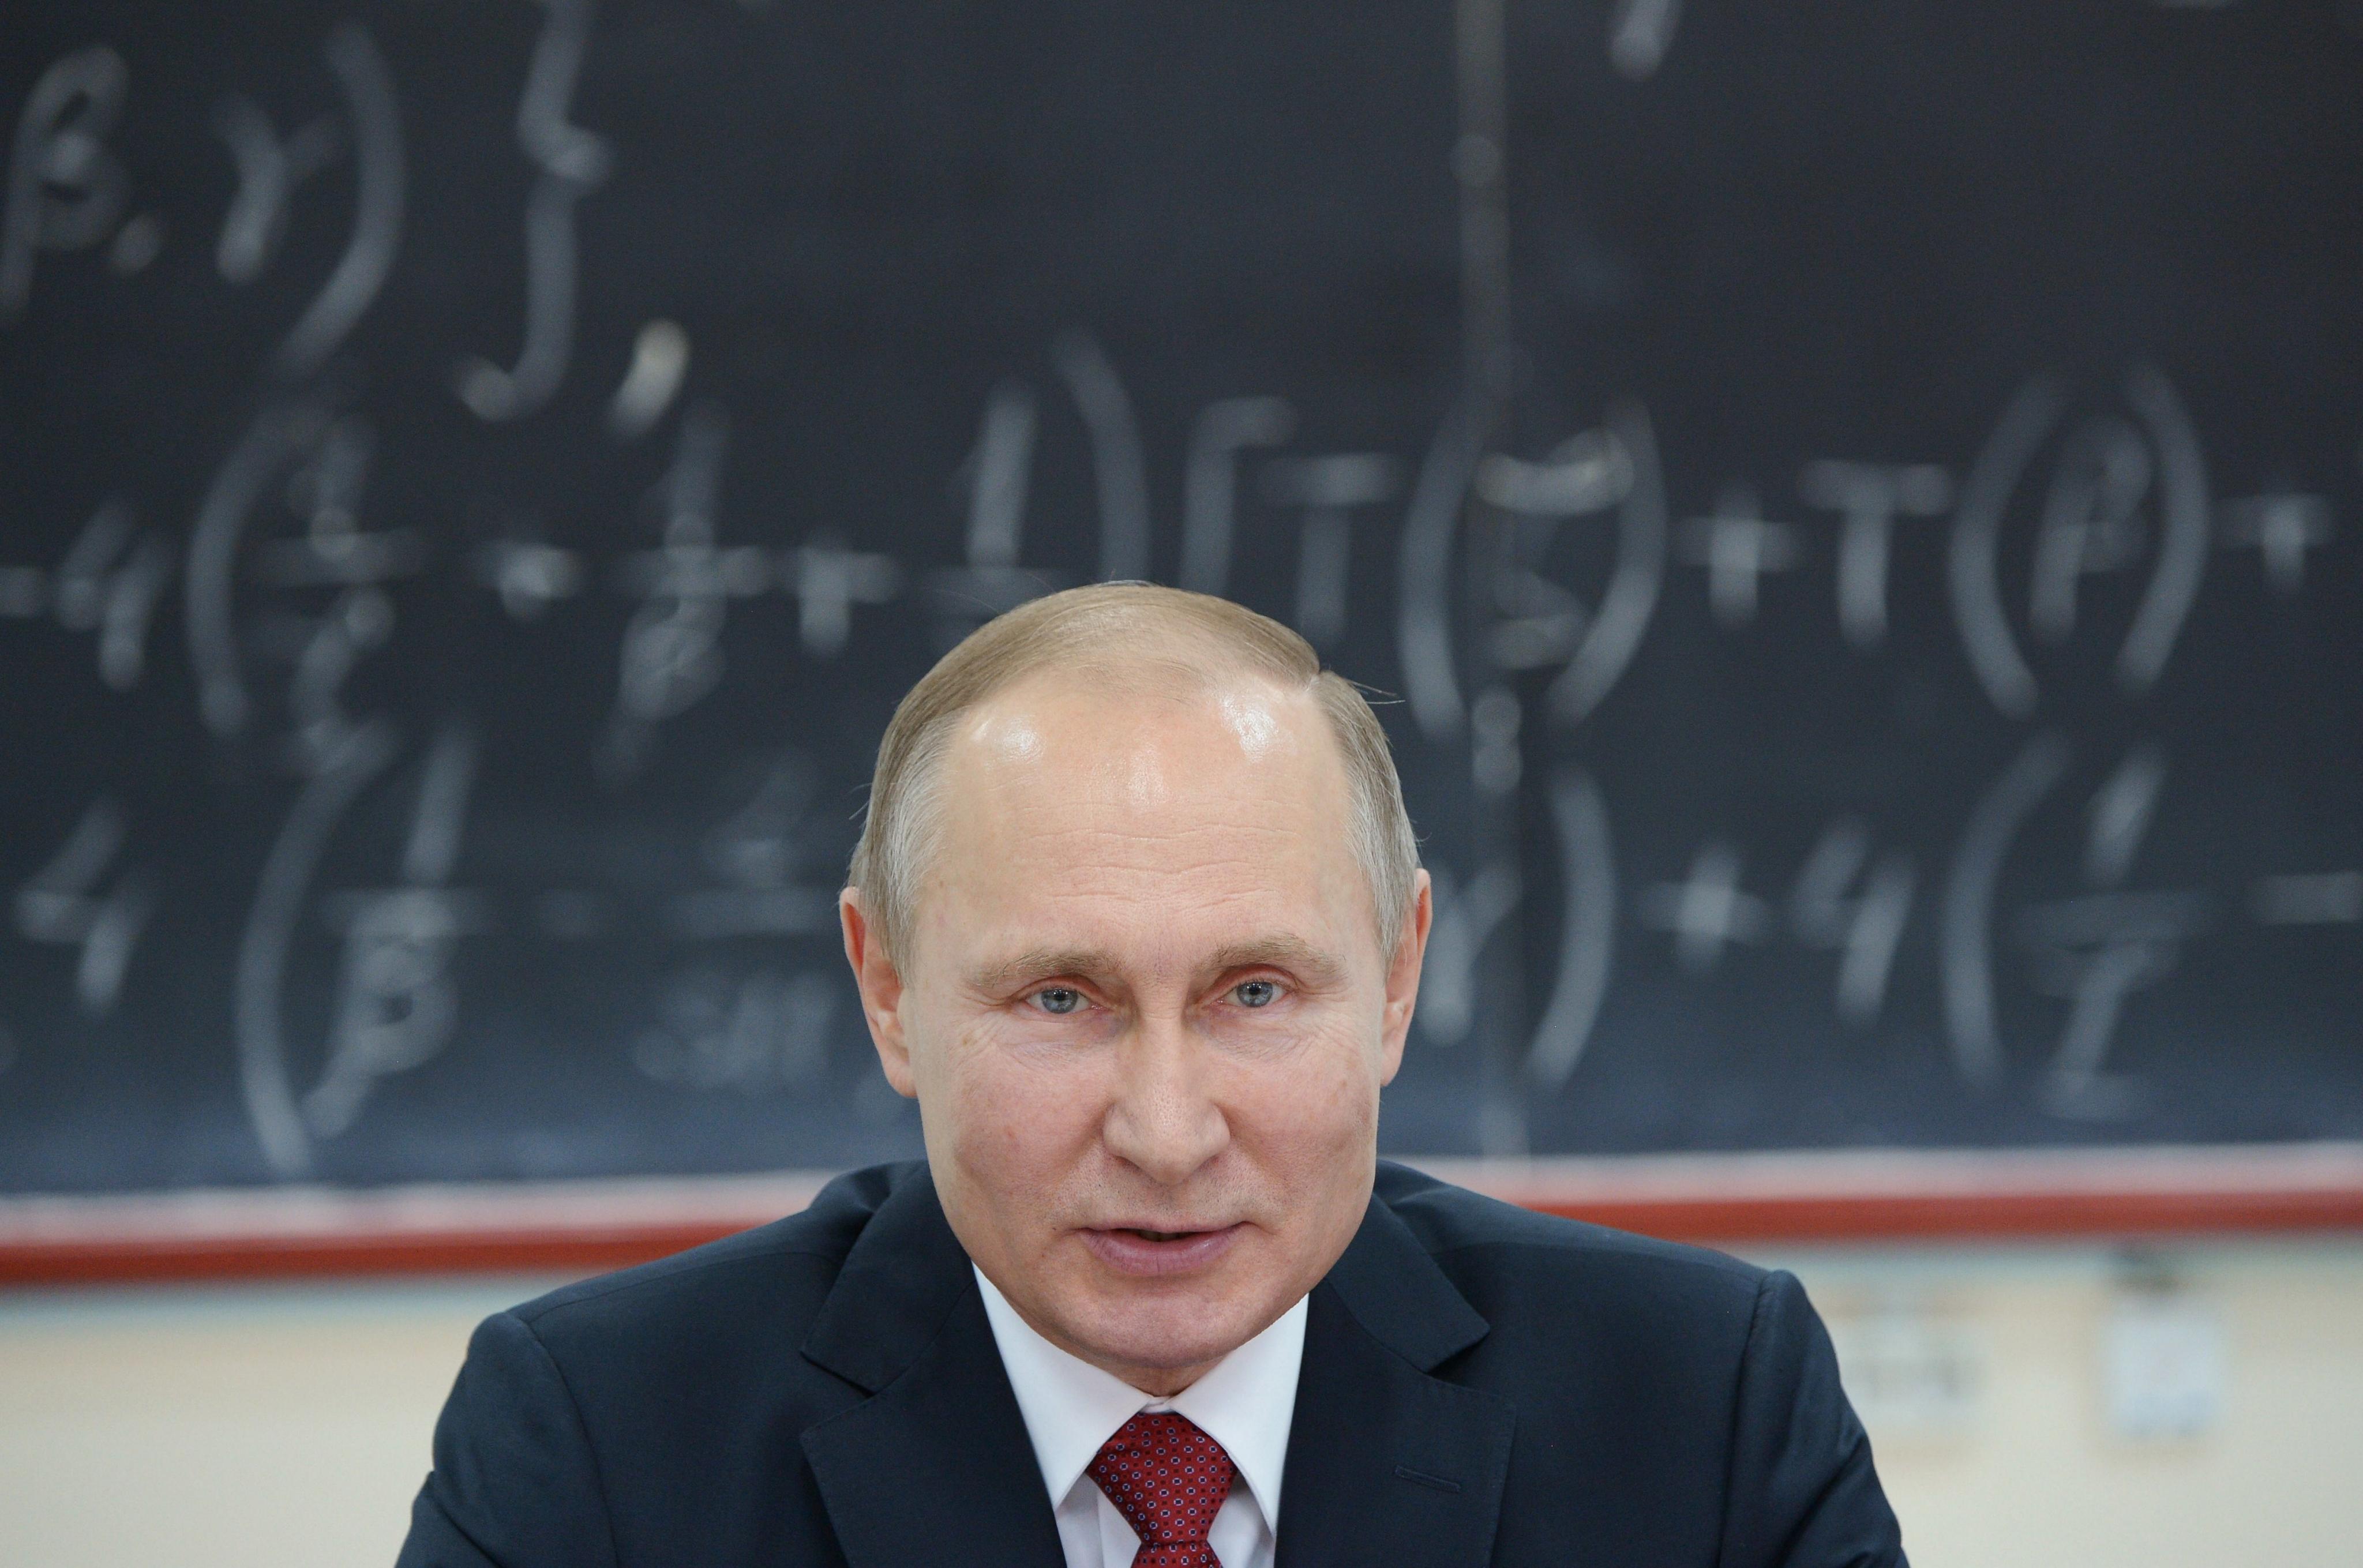 Putin confiesa que no tiene smartphone ni cuentas en redes sociales